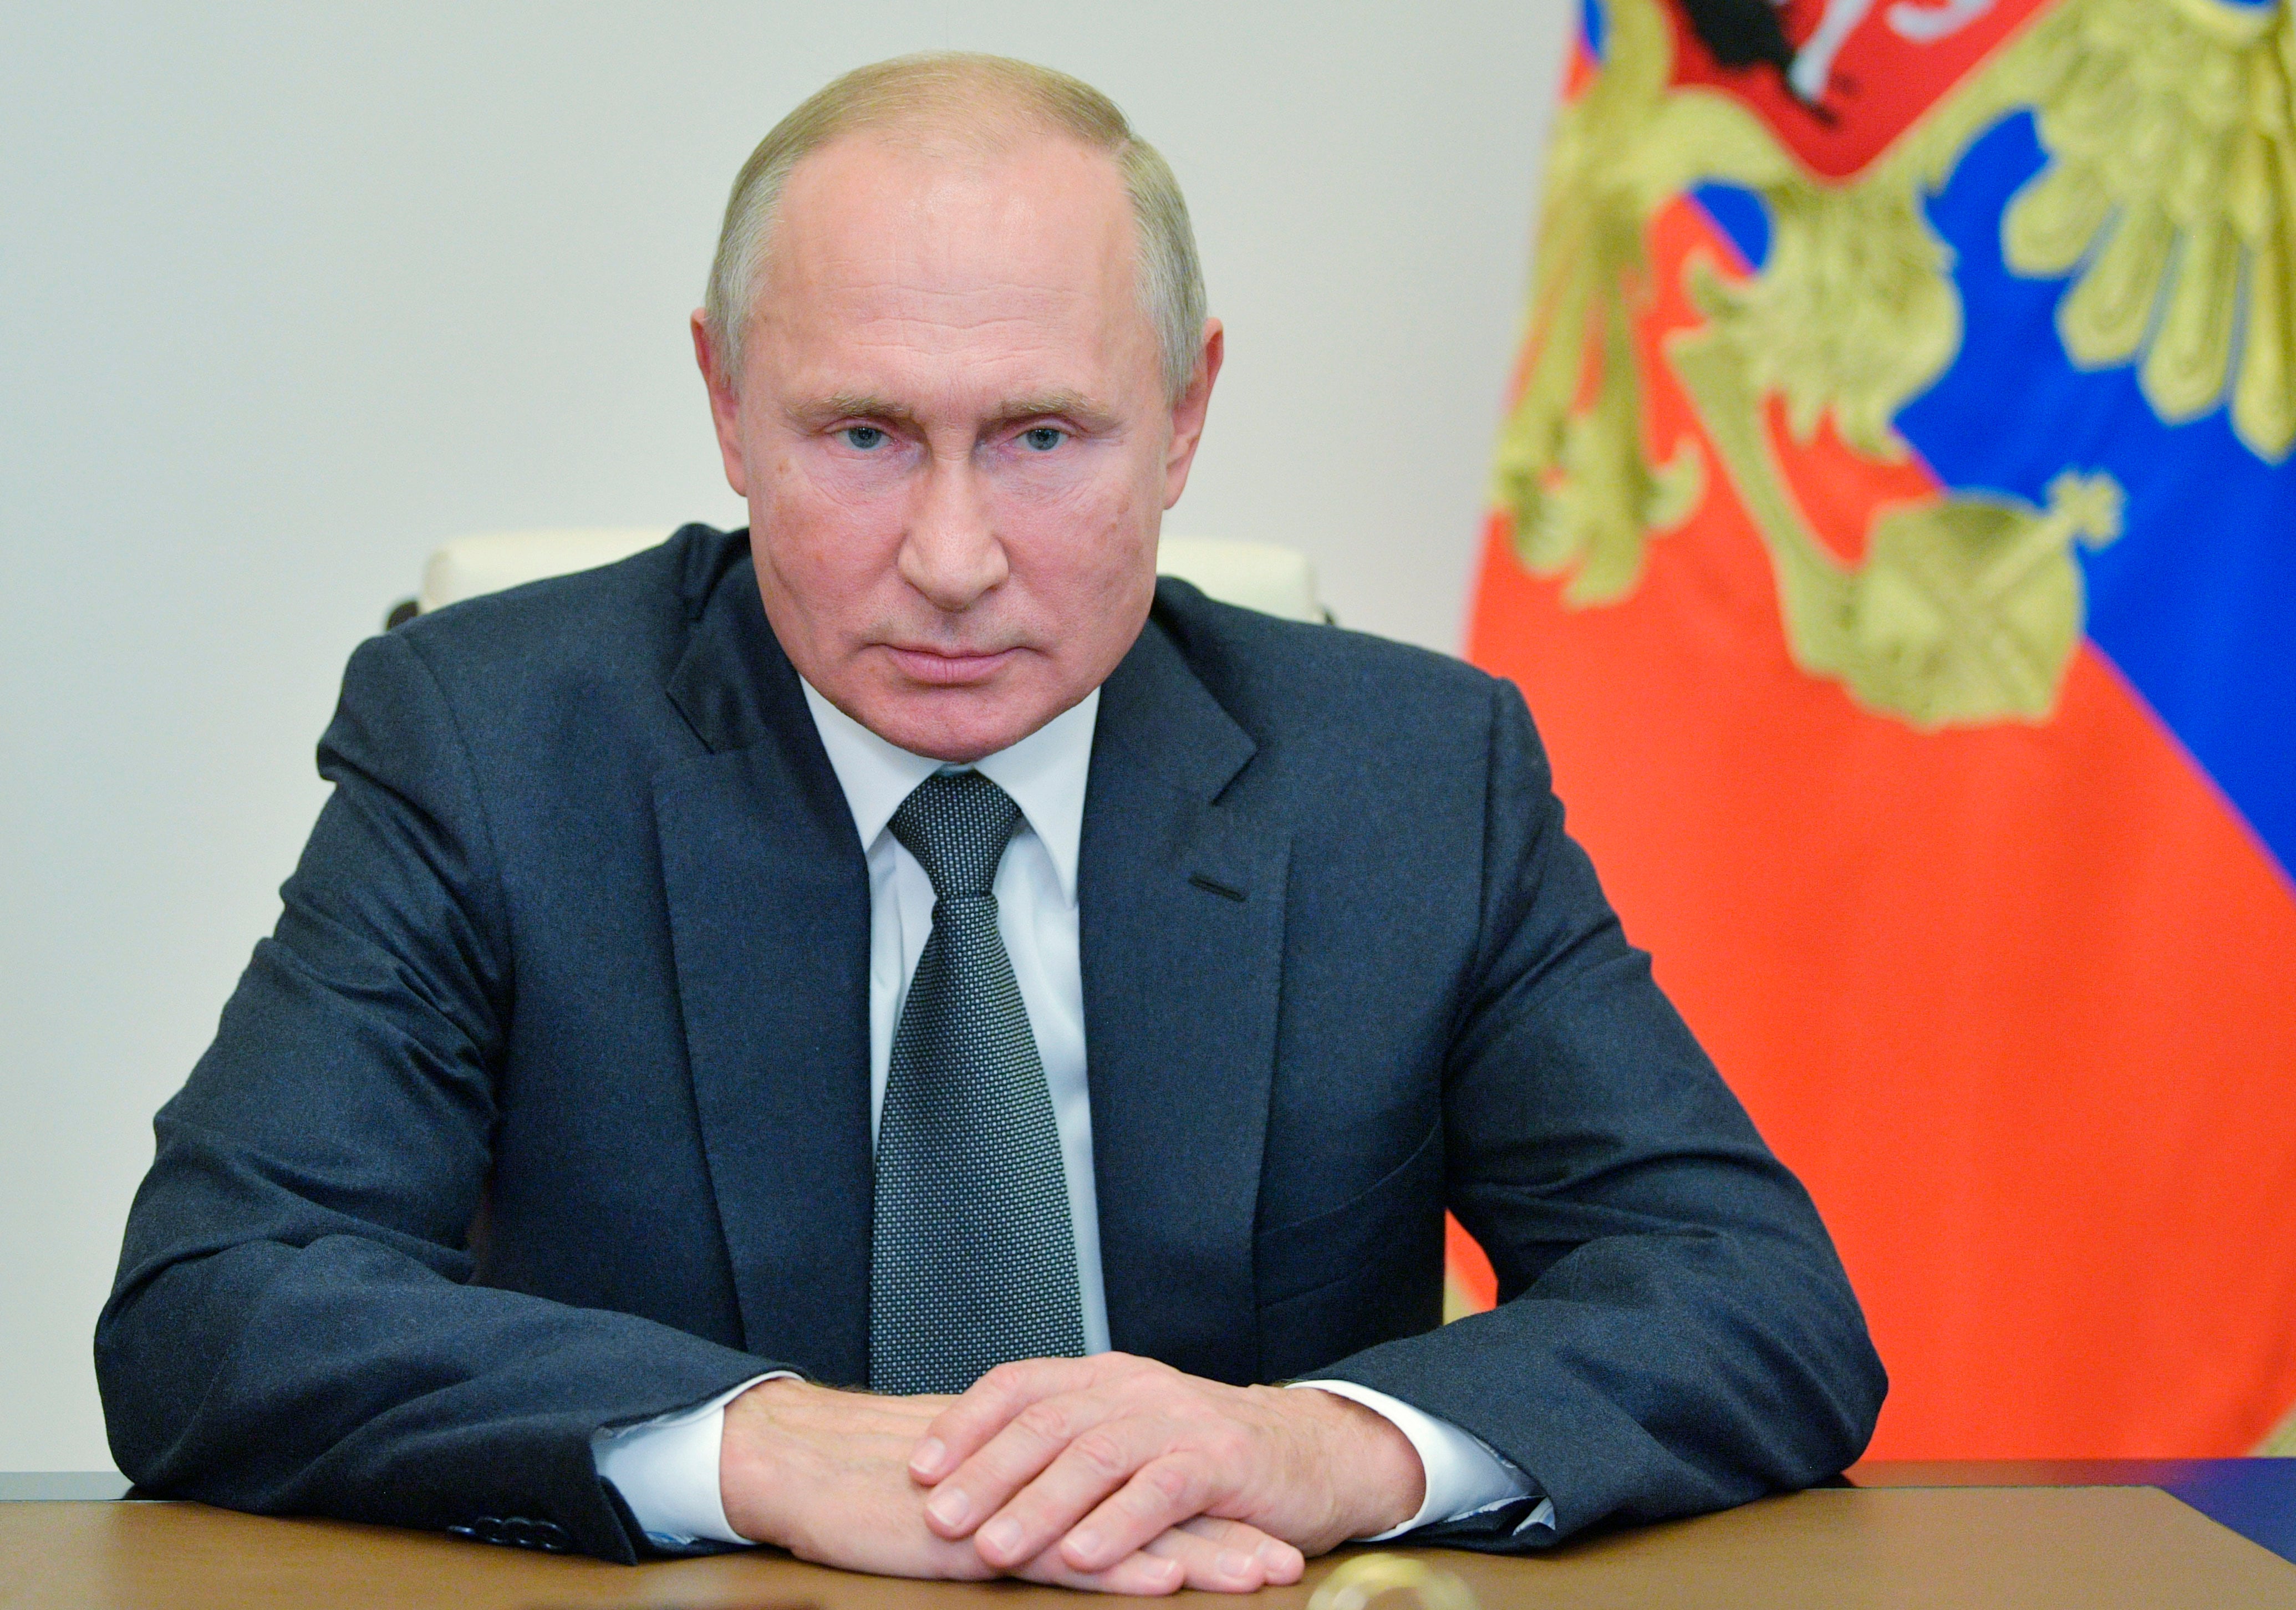 El presidente de Rusia negó entrometerse en las elecciones de Estados Unidos.